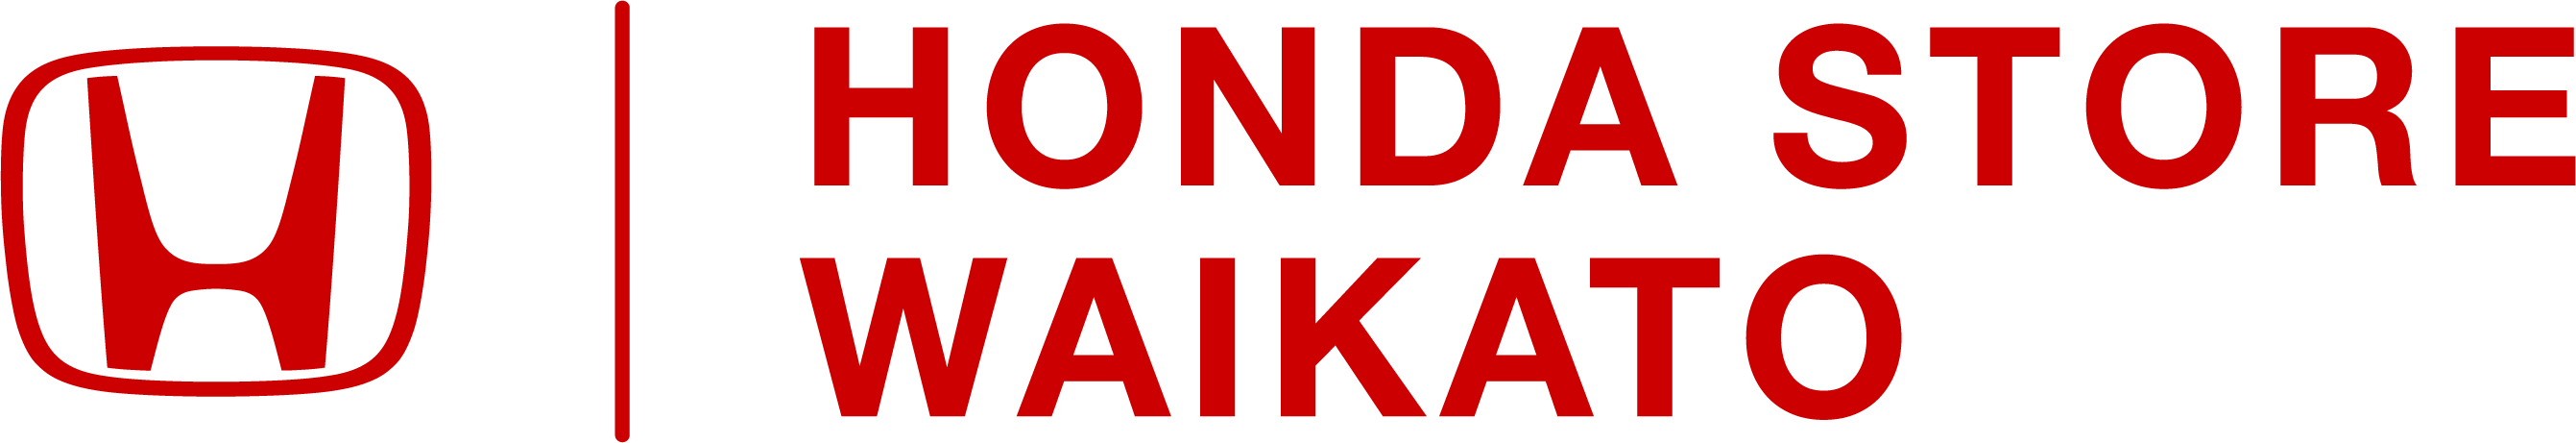 Waikato_honda